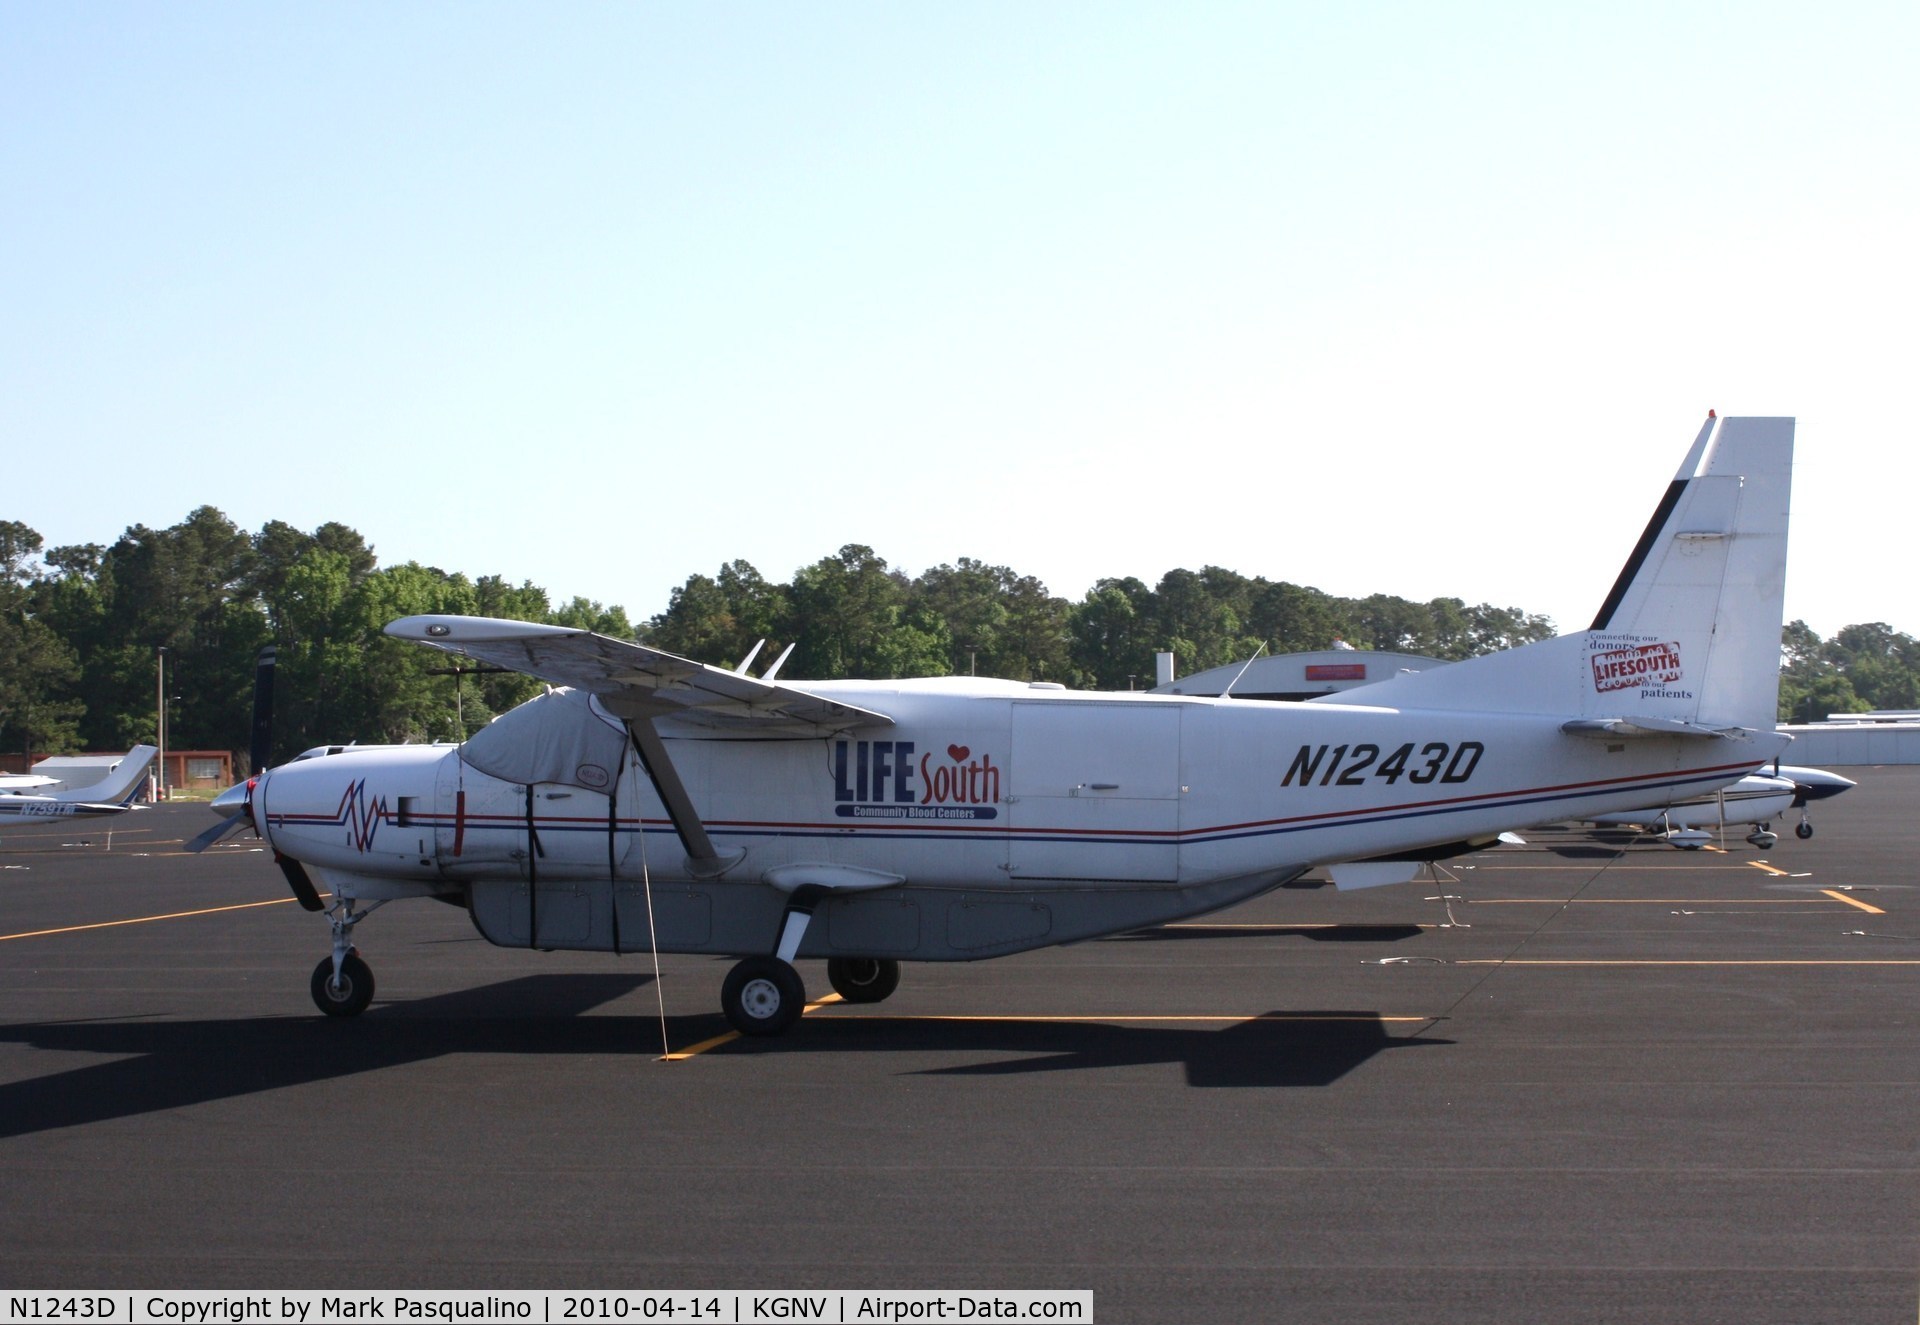 N1243D, 2003 Cessna 208B C/N 208B1003, Cessna 208B